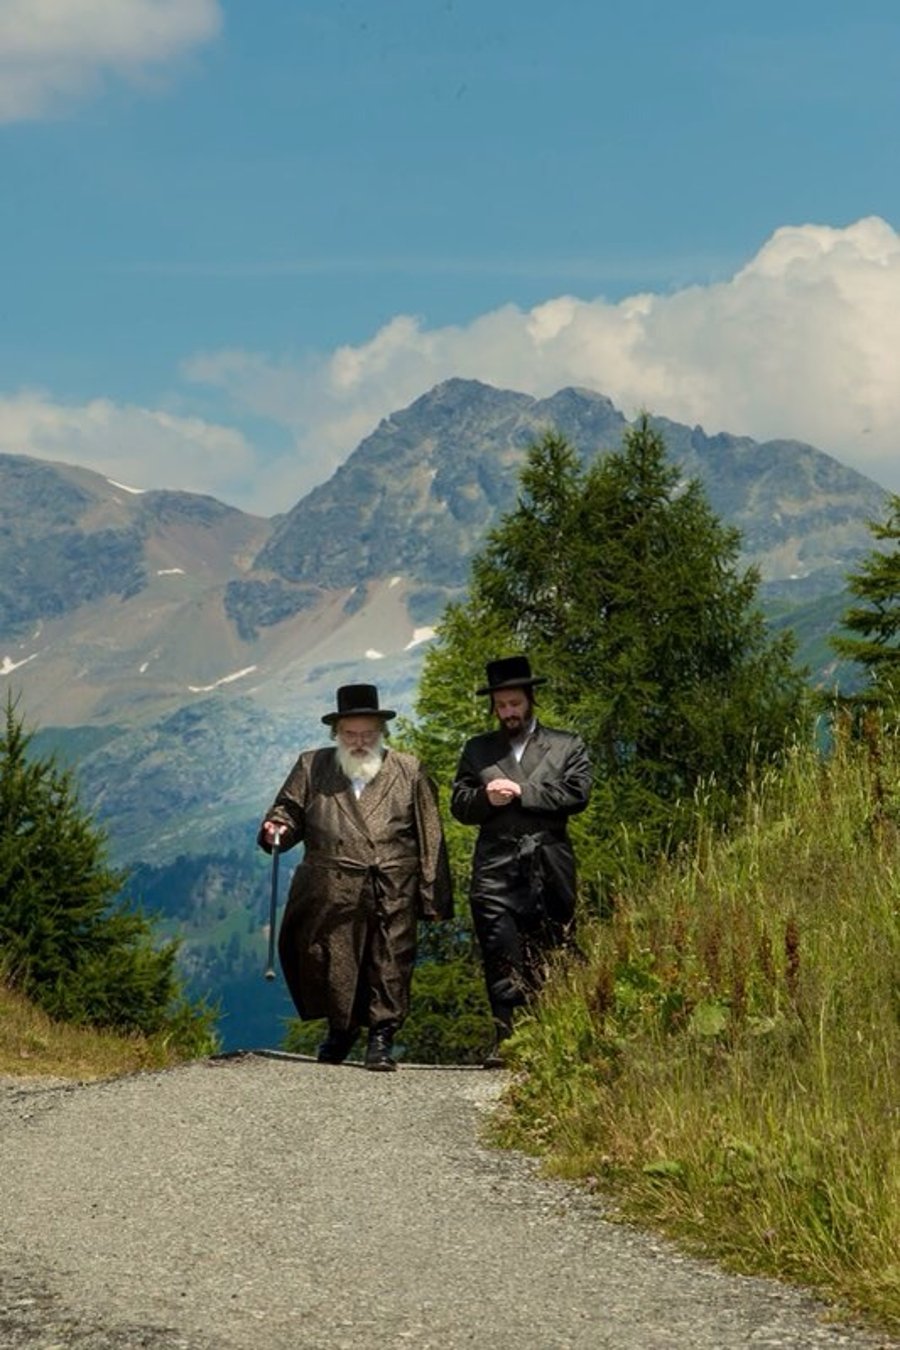 תיעוד מרהיב: האדמו"ר מויז'ניץ נופש בשוויץ ומטייל בהרים